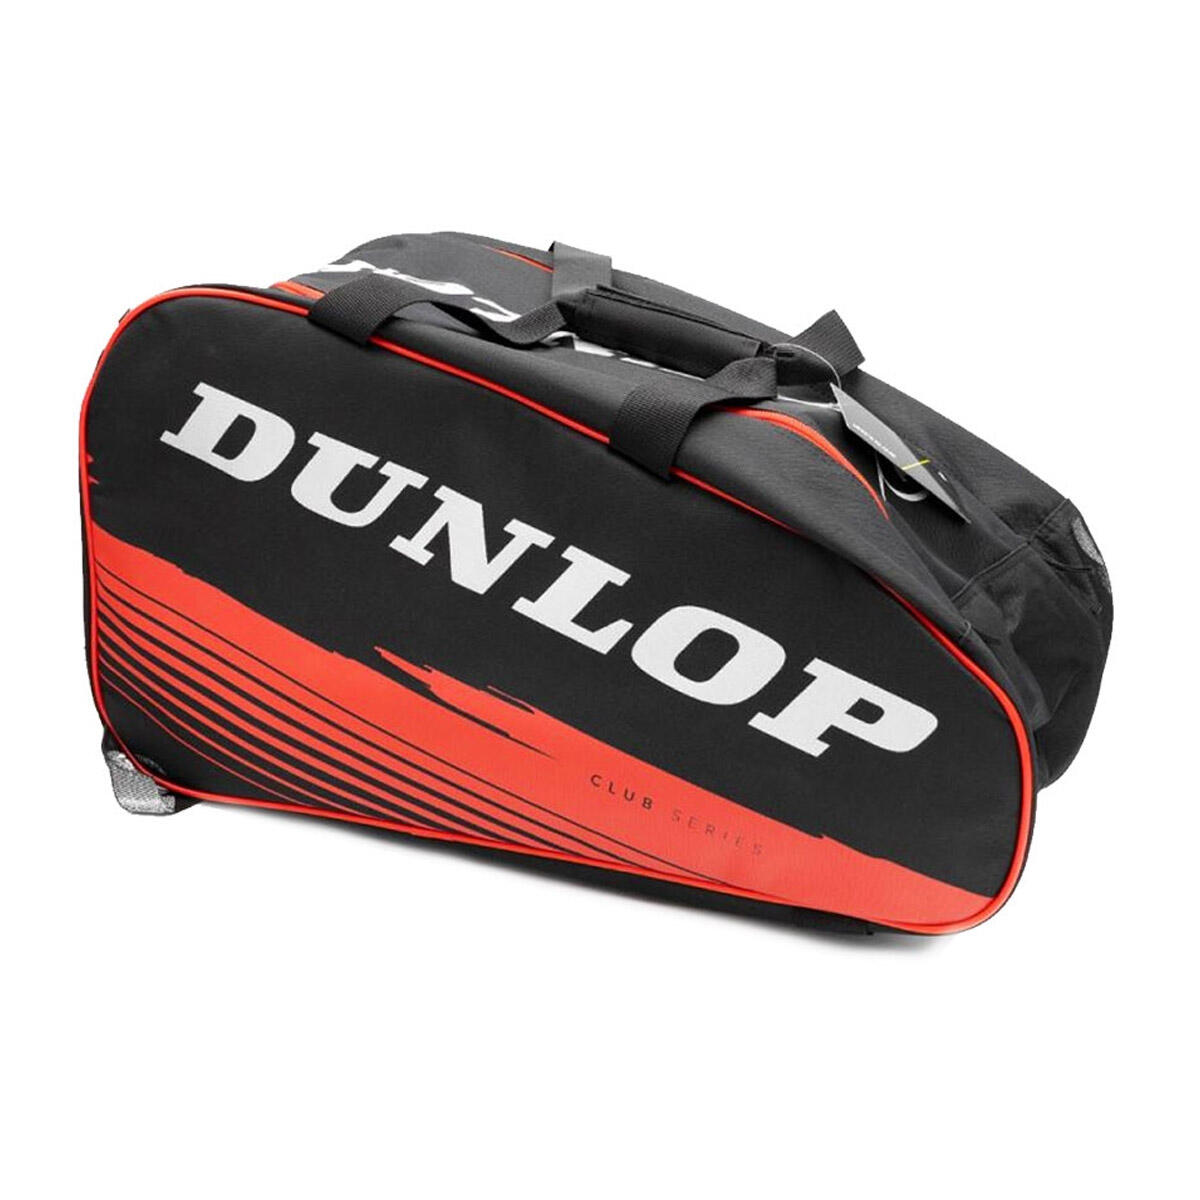 Dunlop Paletero Club Padel Racket Bag - Black/Red 1/2